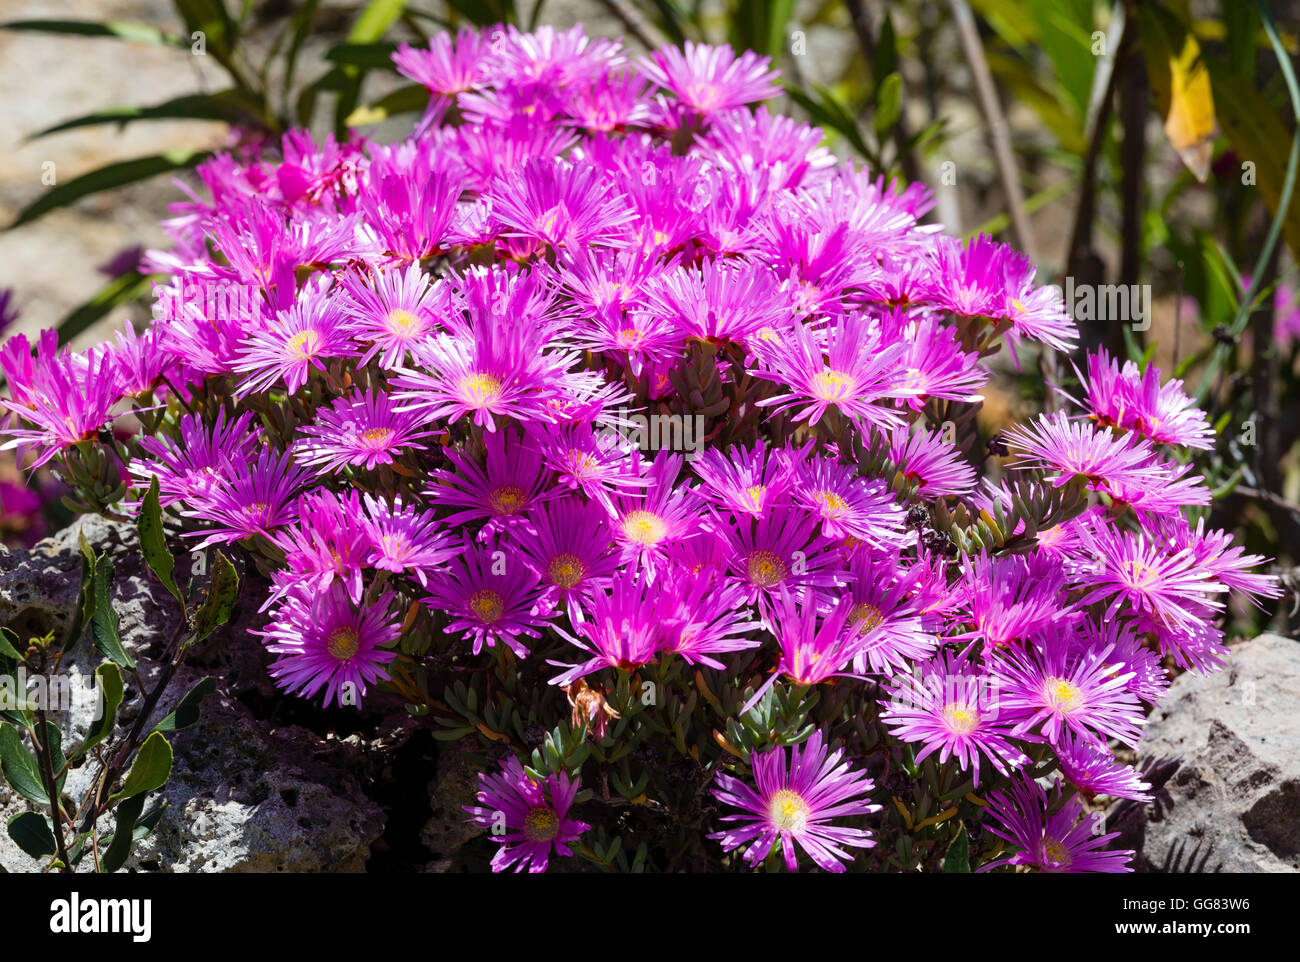 Carpobrotus (known as pigface, ice plant) with pink large daisy-like flowers closeup. Stock Photo